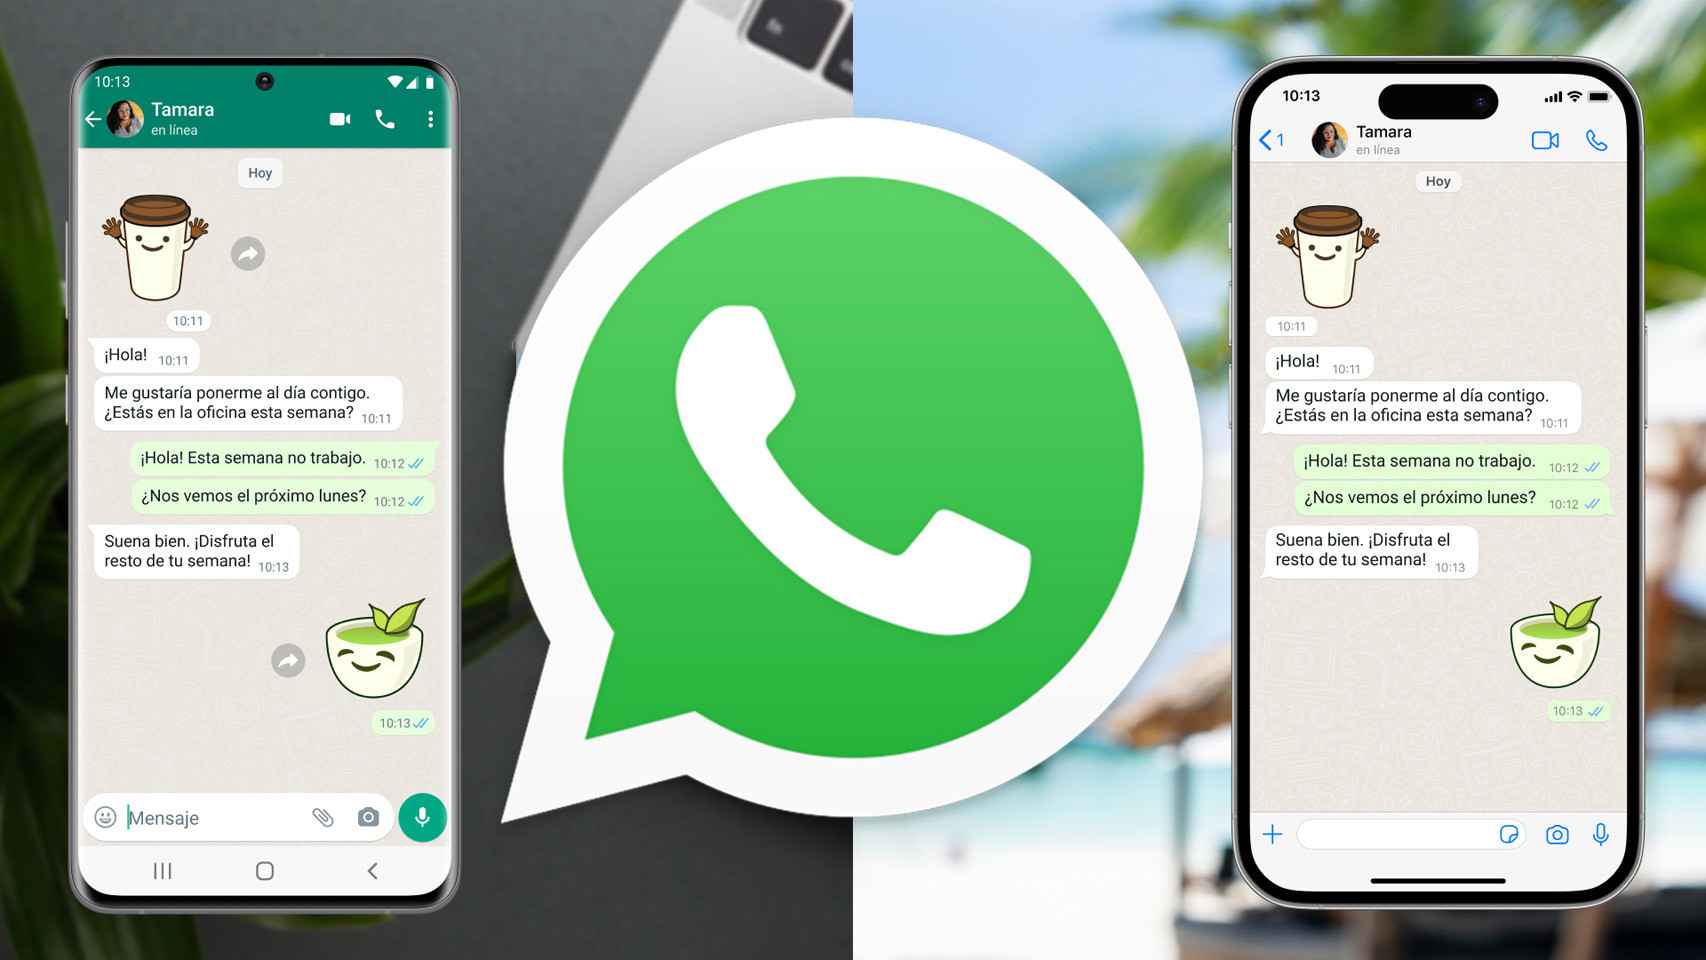 Ya puedes tener WhatsApp en dos teléfonos móviles diferentes con